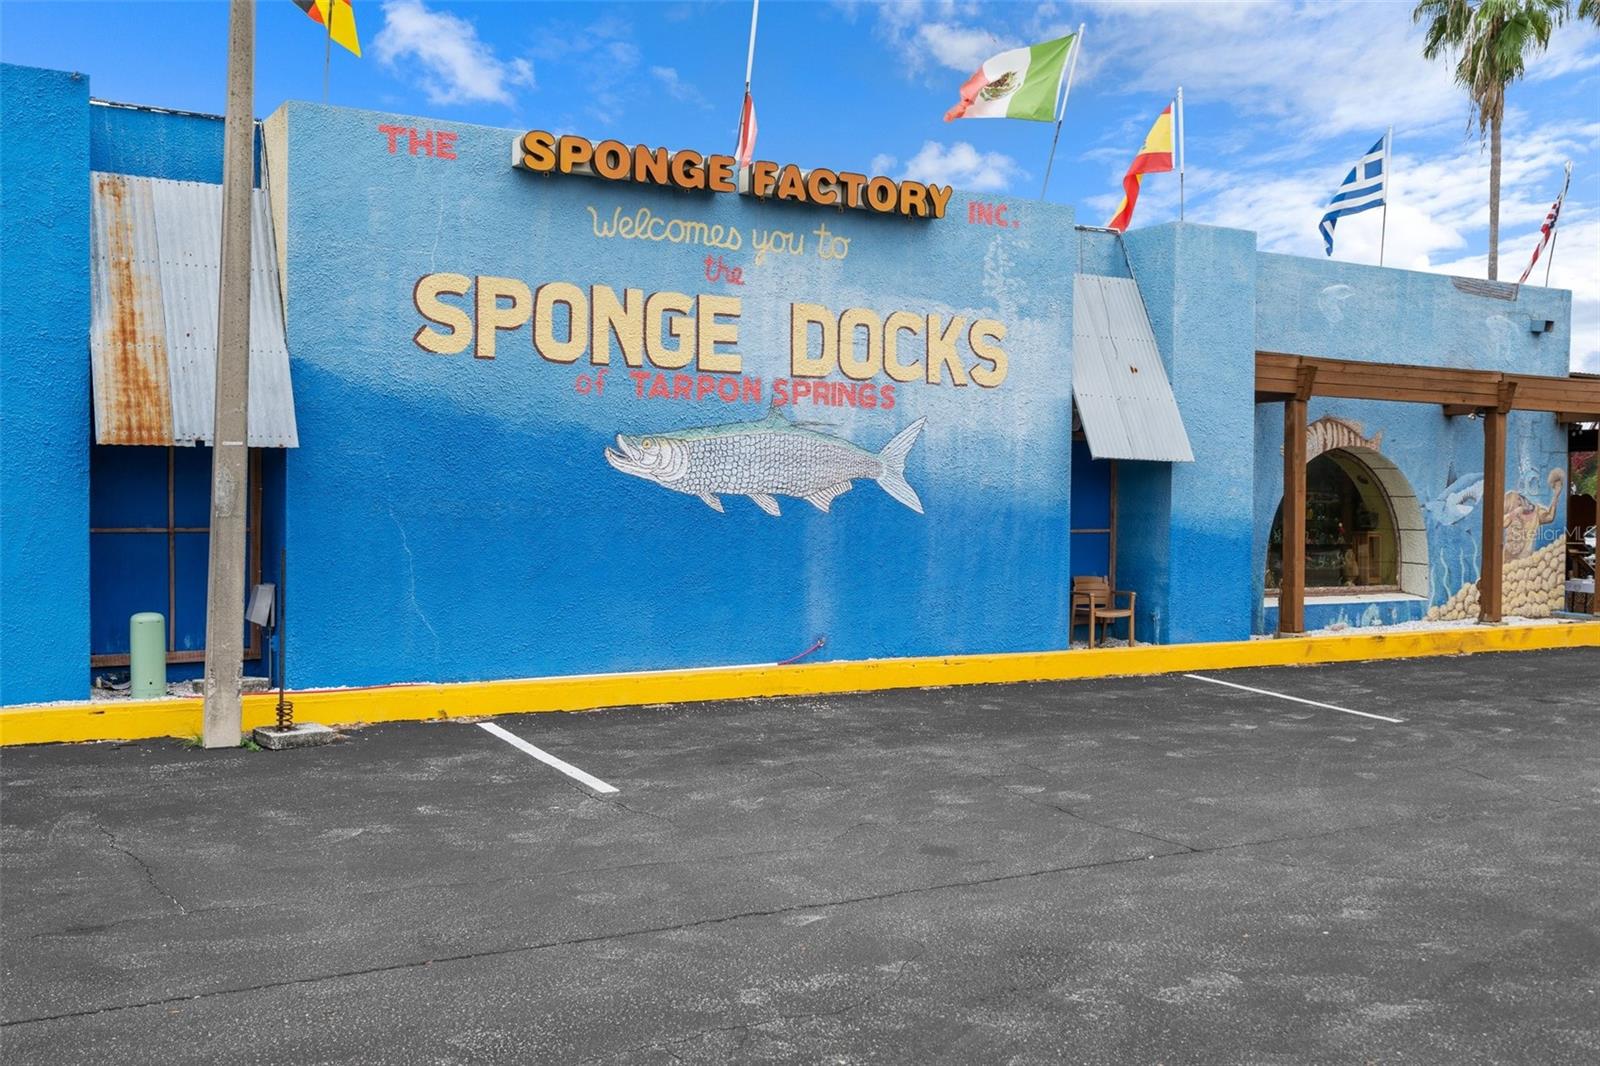 Sponge Docks within walking distance